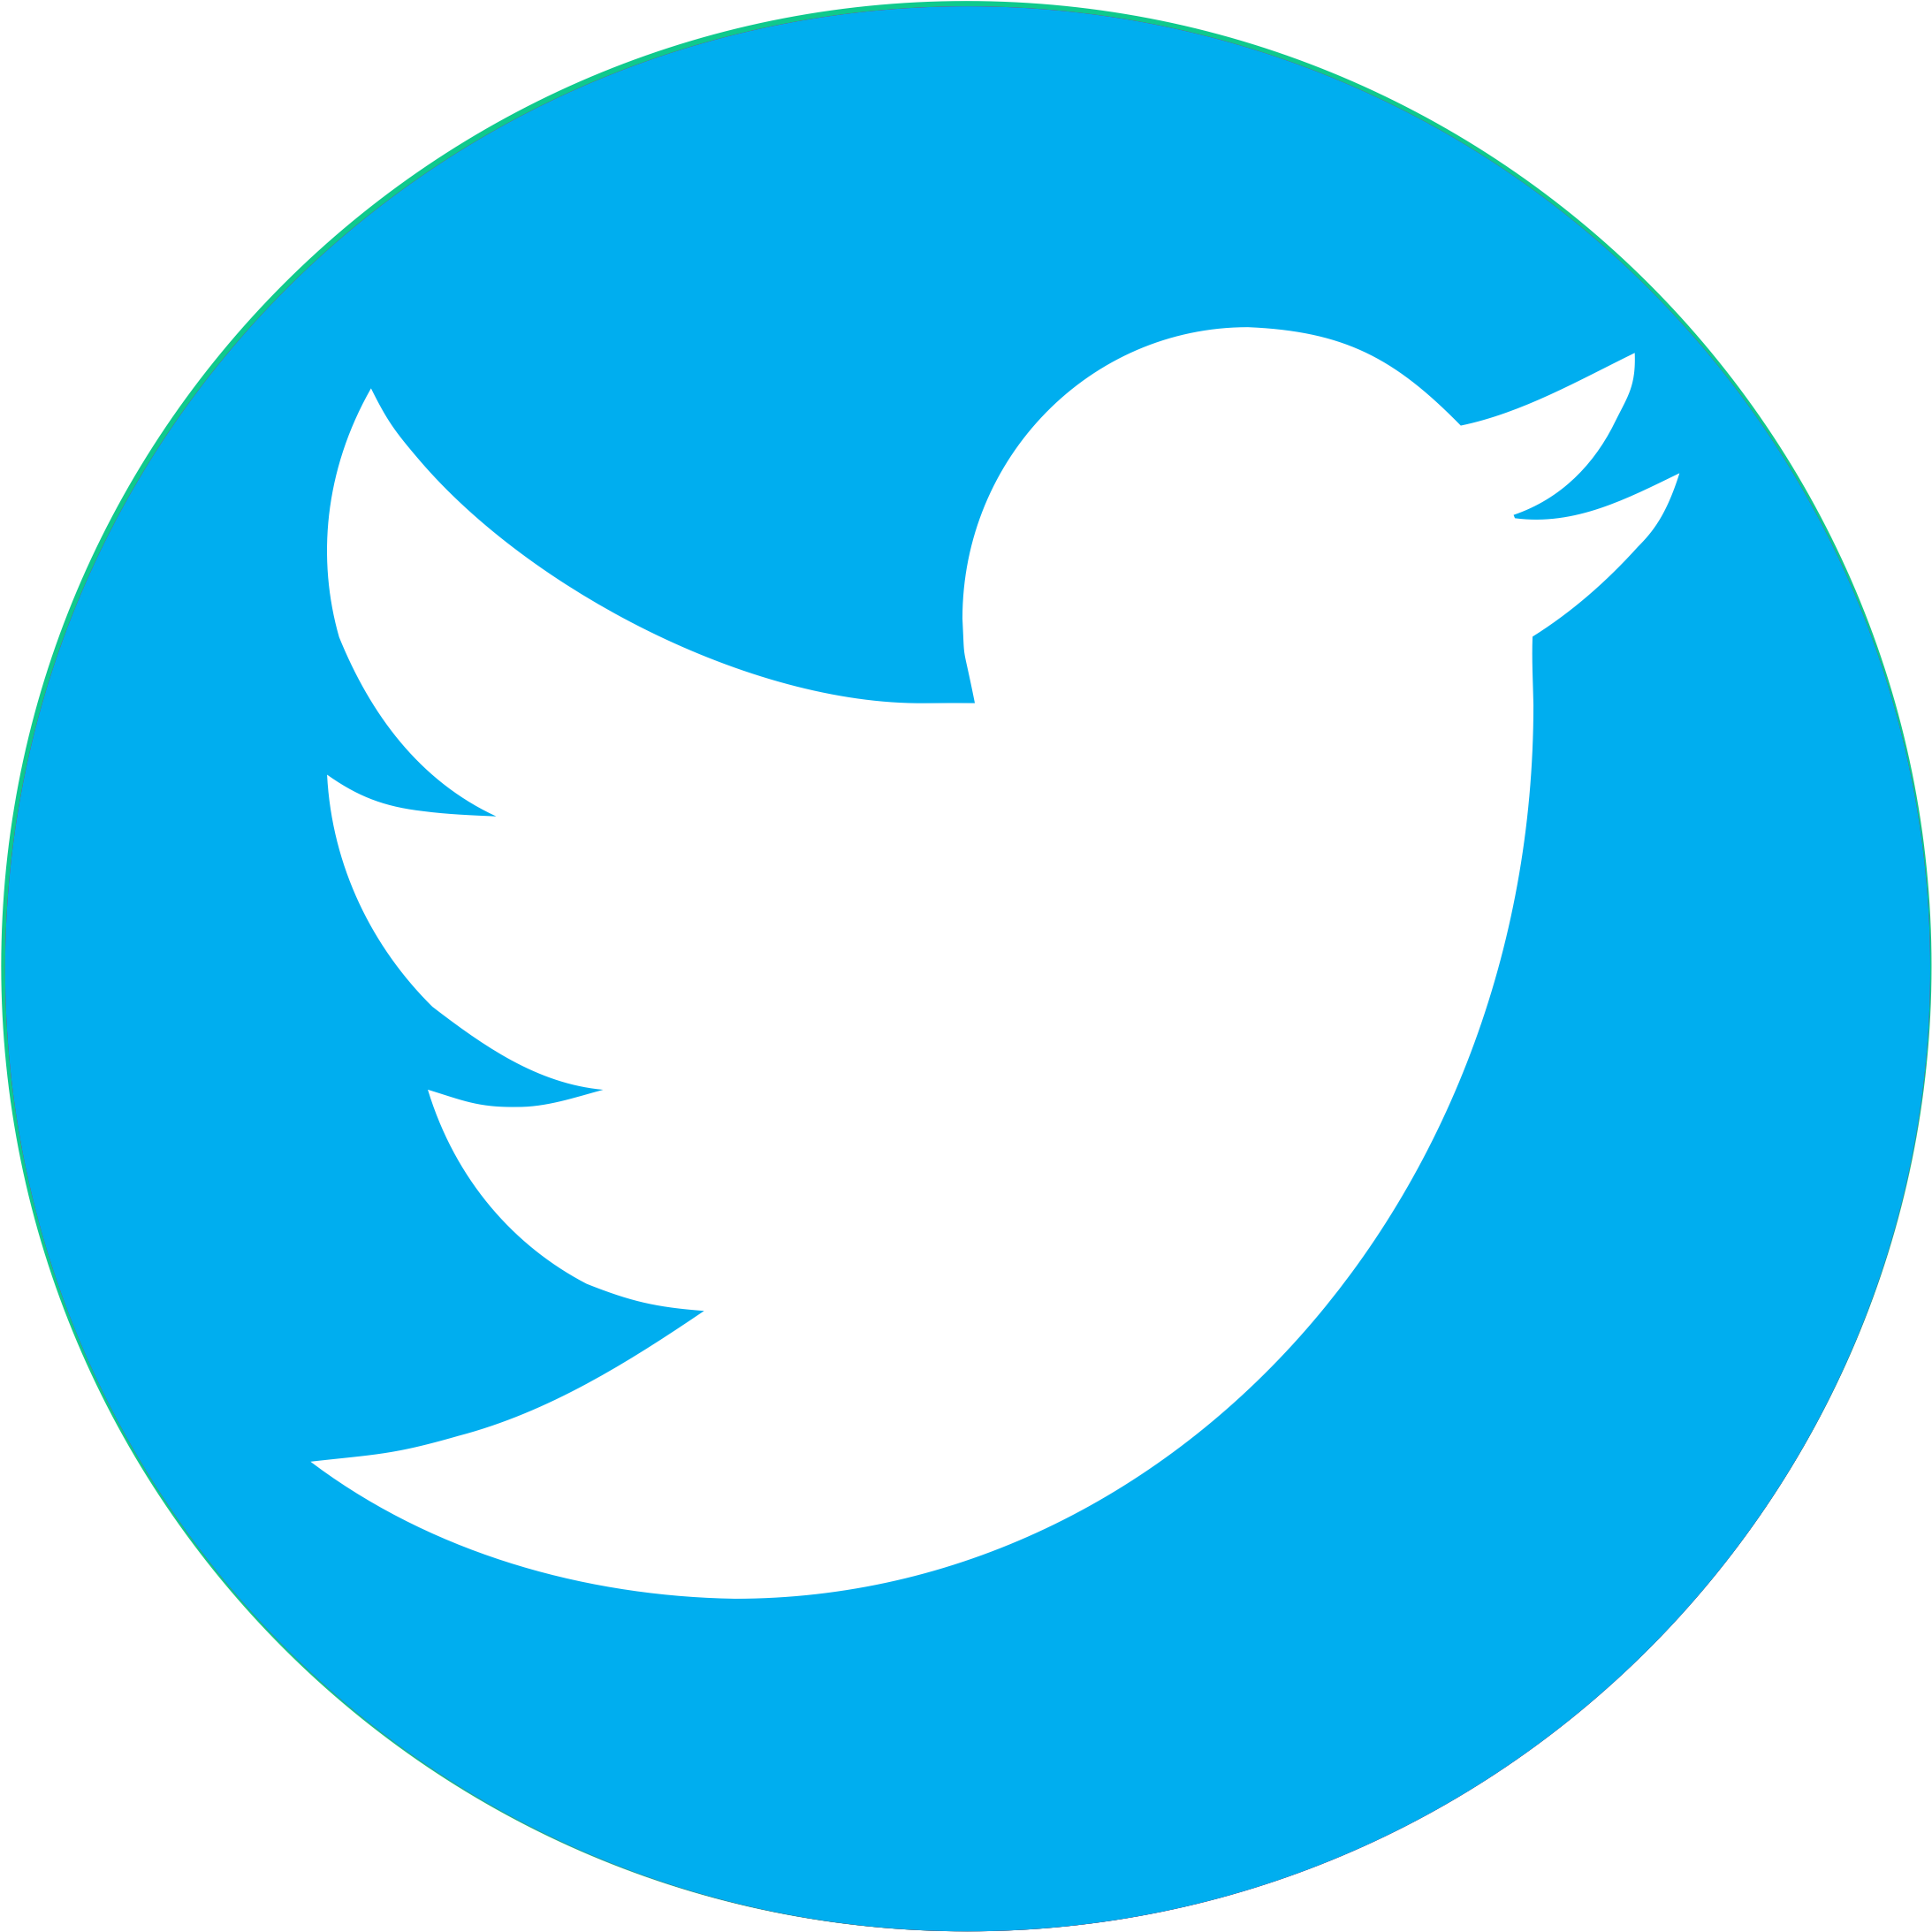 Twiter Logo Png - KibrisPDR